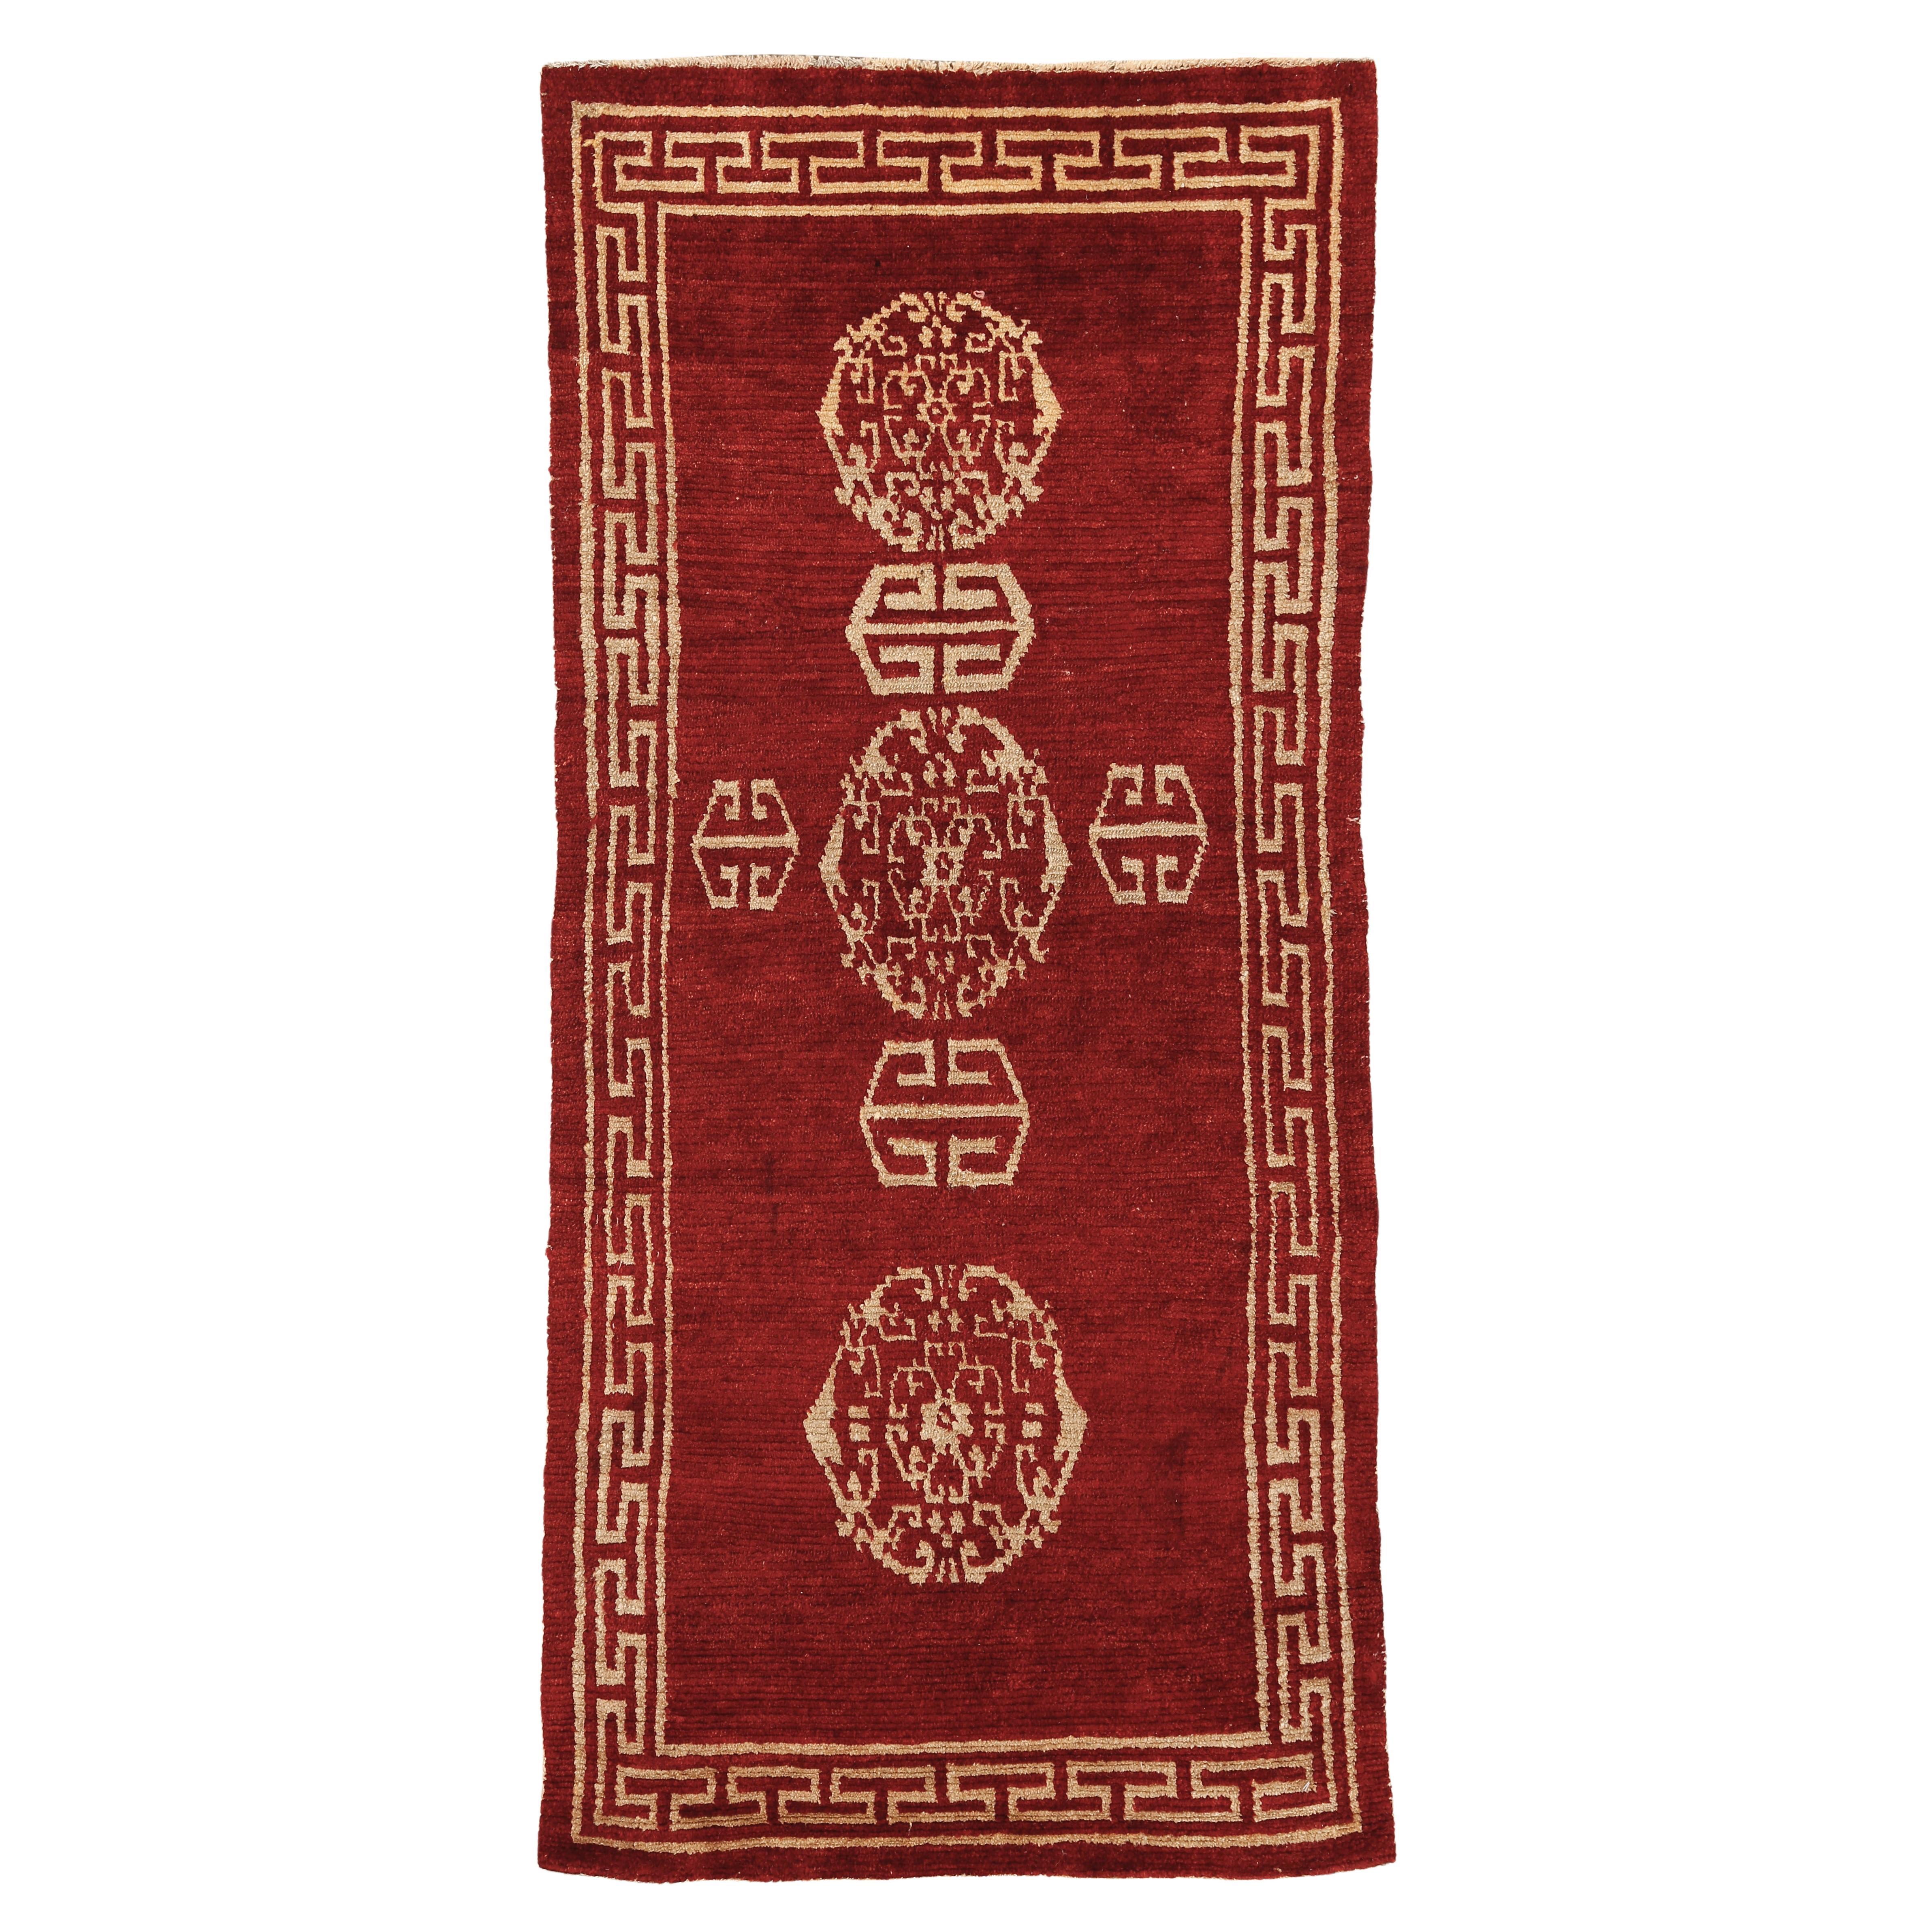 Tapis de méditation tibétain ancien en laque rouge de type Khaden